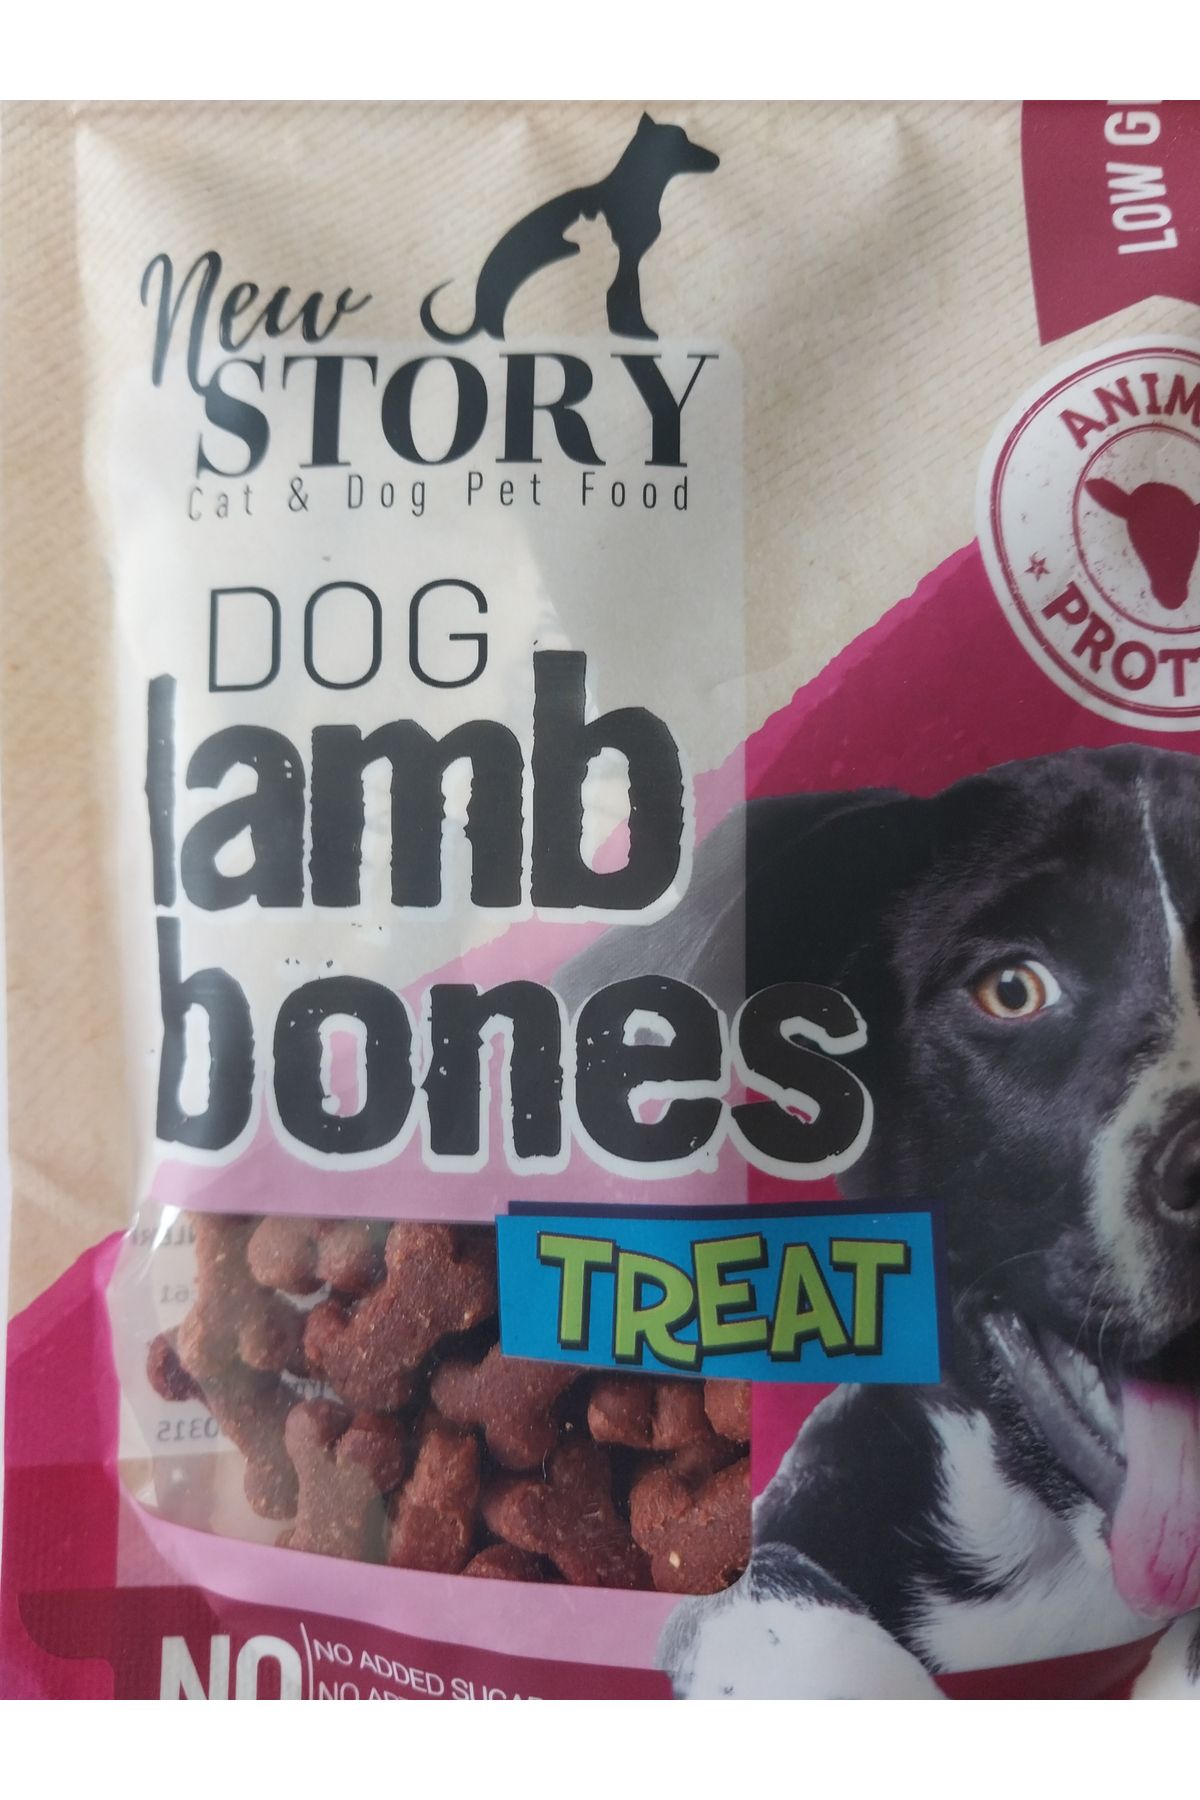 New Story Dog Lamb Bones Kuzu Etli Kopek Odulu Yumusak, Atistirmalik 80 gr